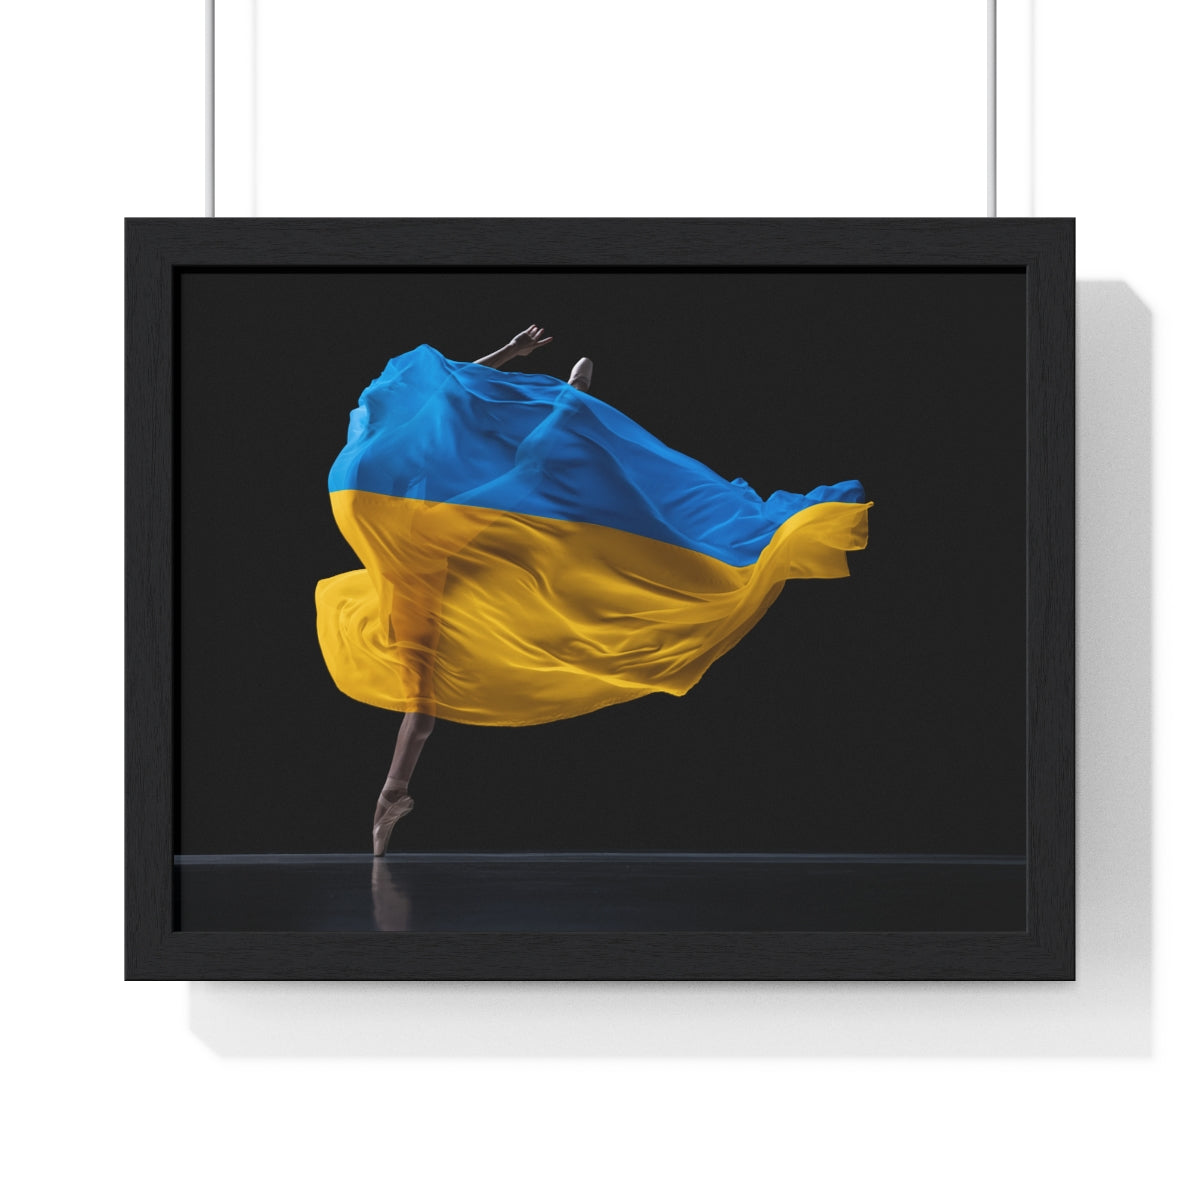 Ballerina dancing with Ukraine flag - Framed Print